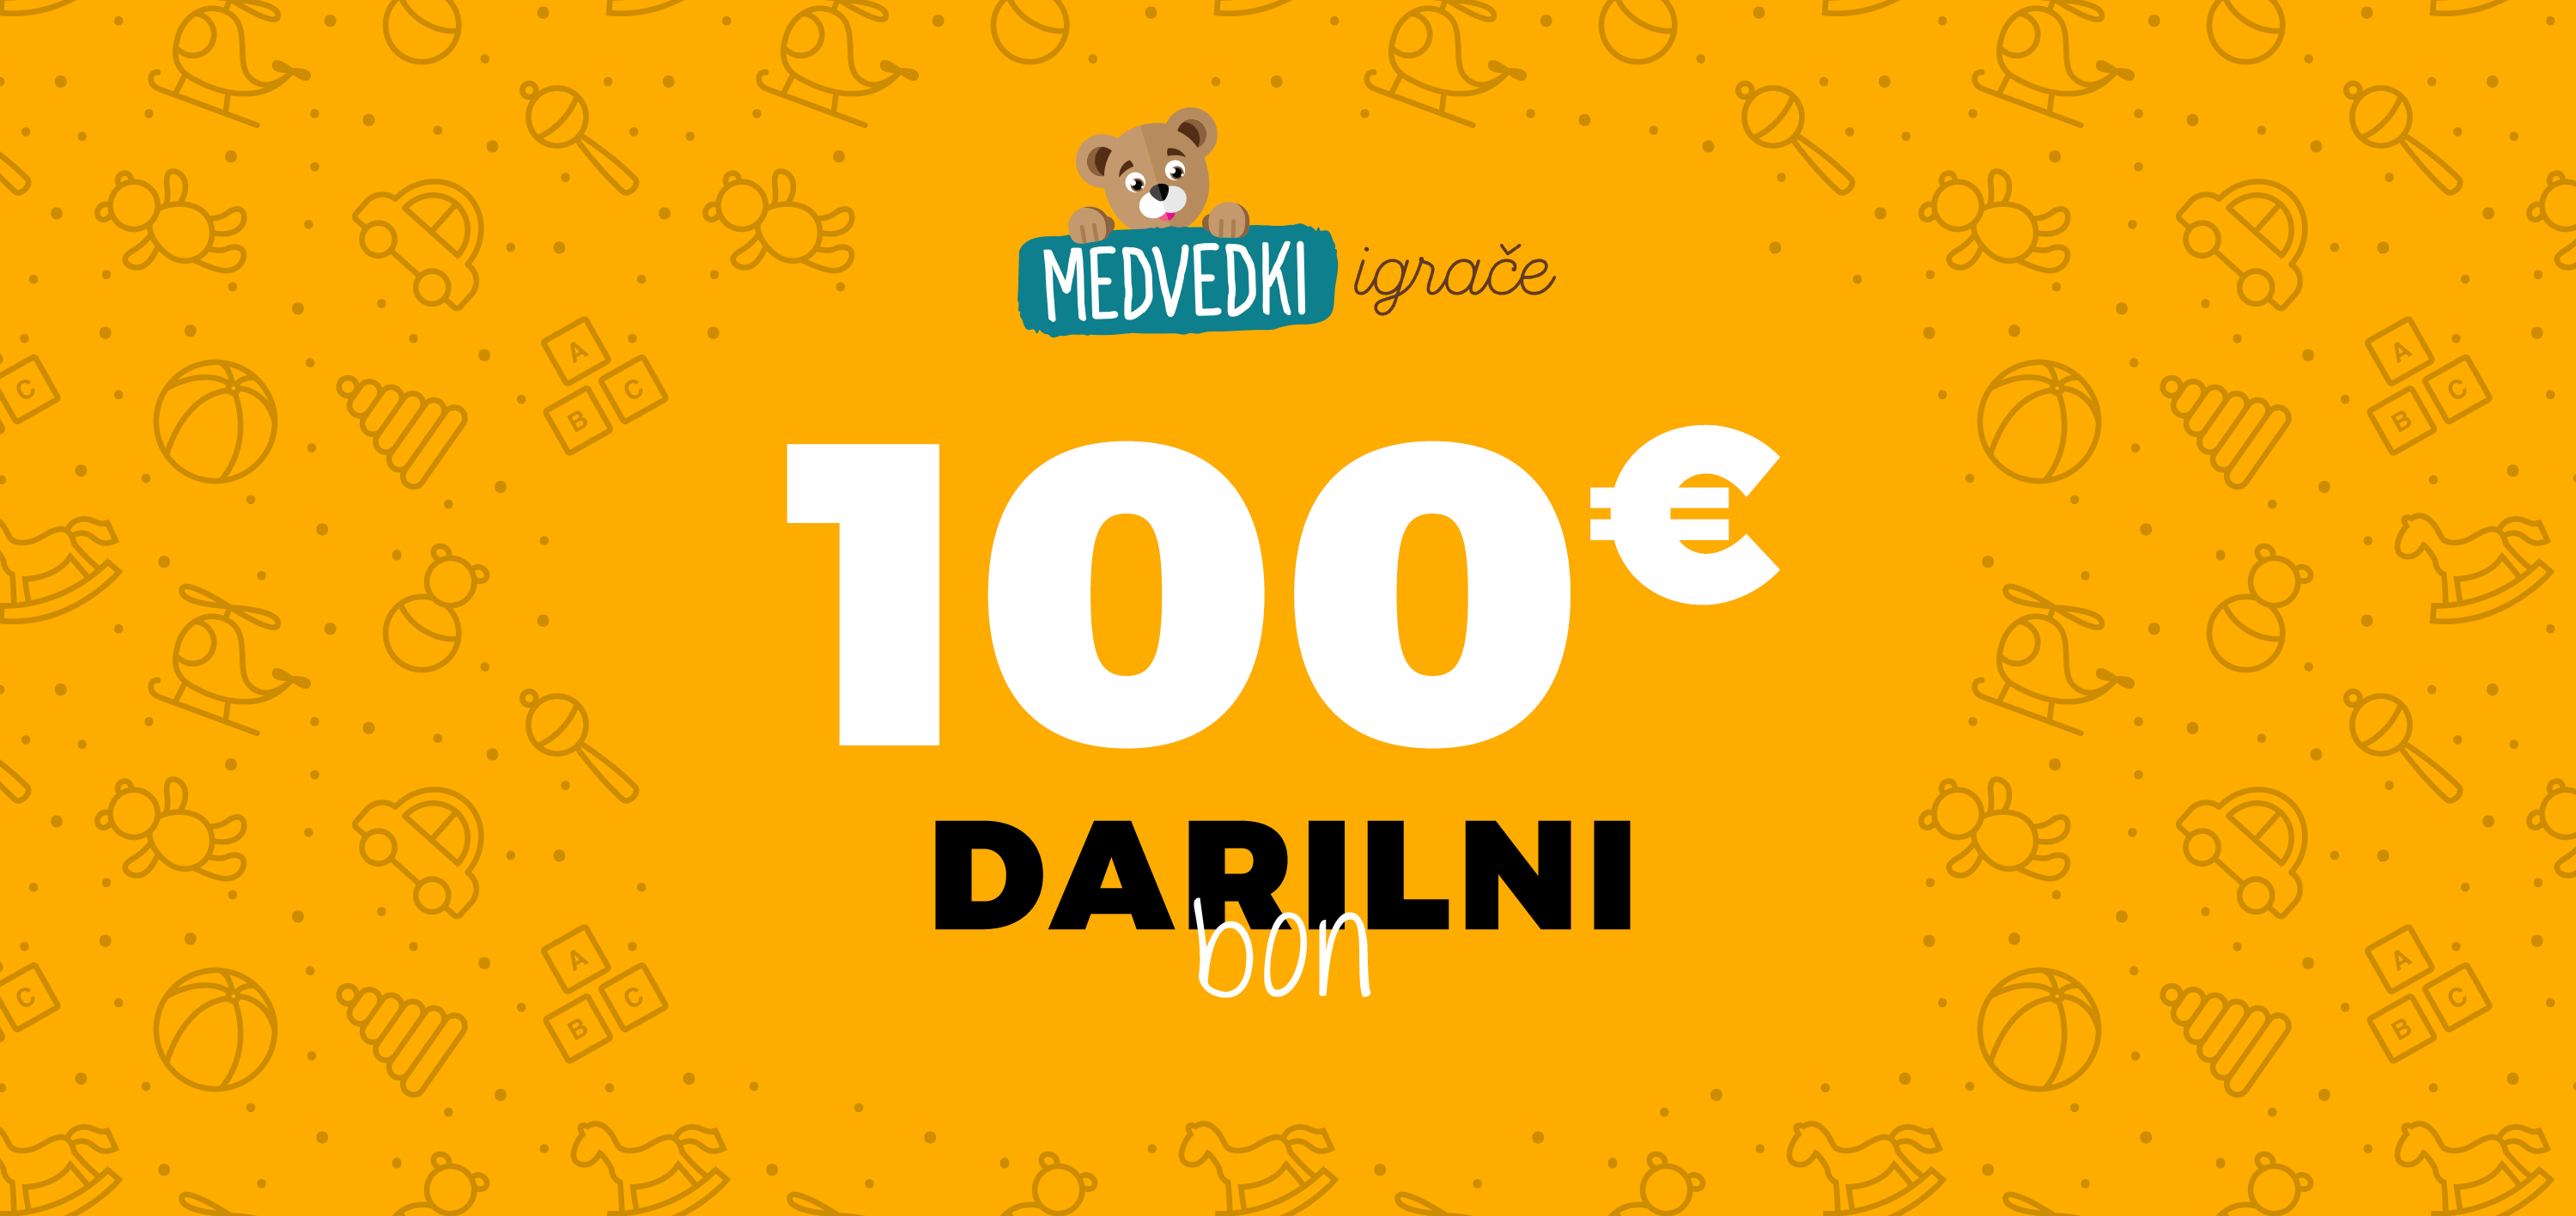 Darilni boni - Darilni bon 100€ 